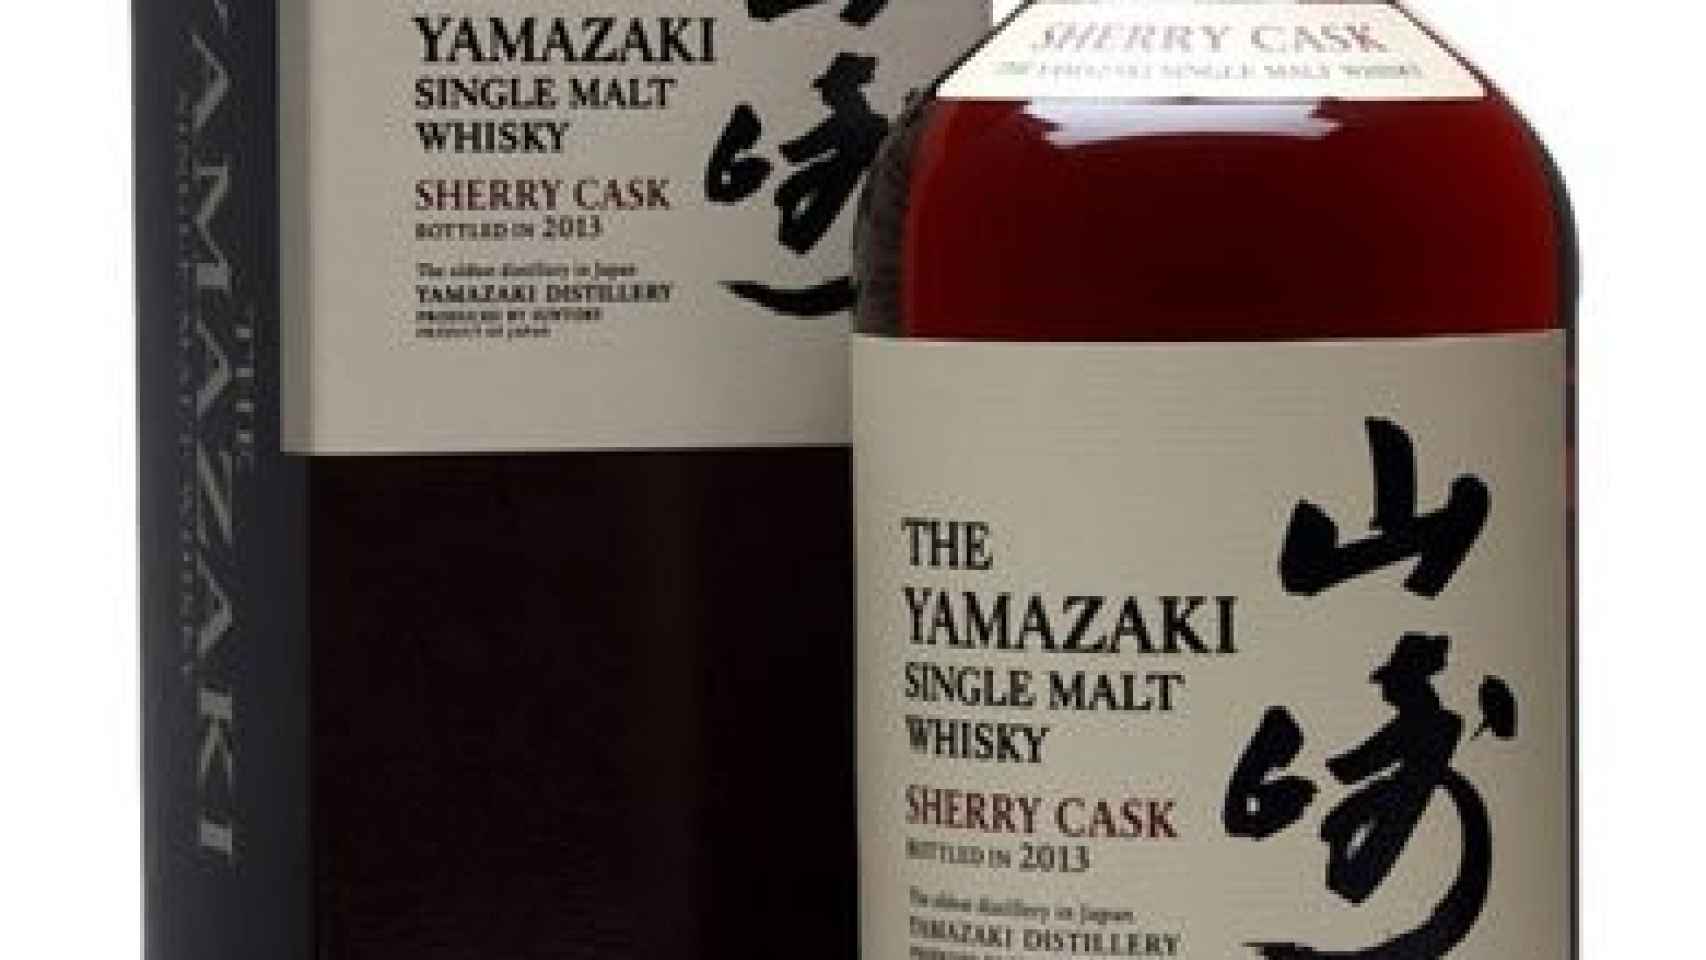 Yamazaki Single Malt Sherry Cask 2013